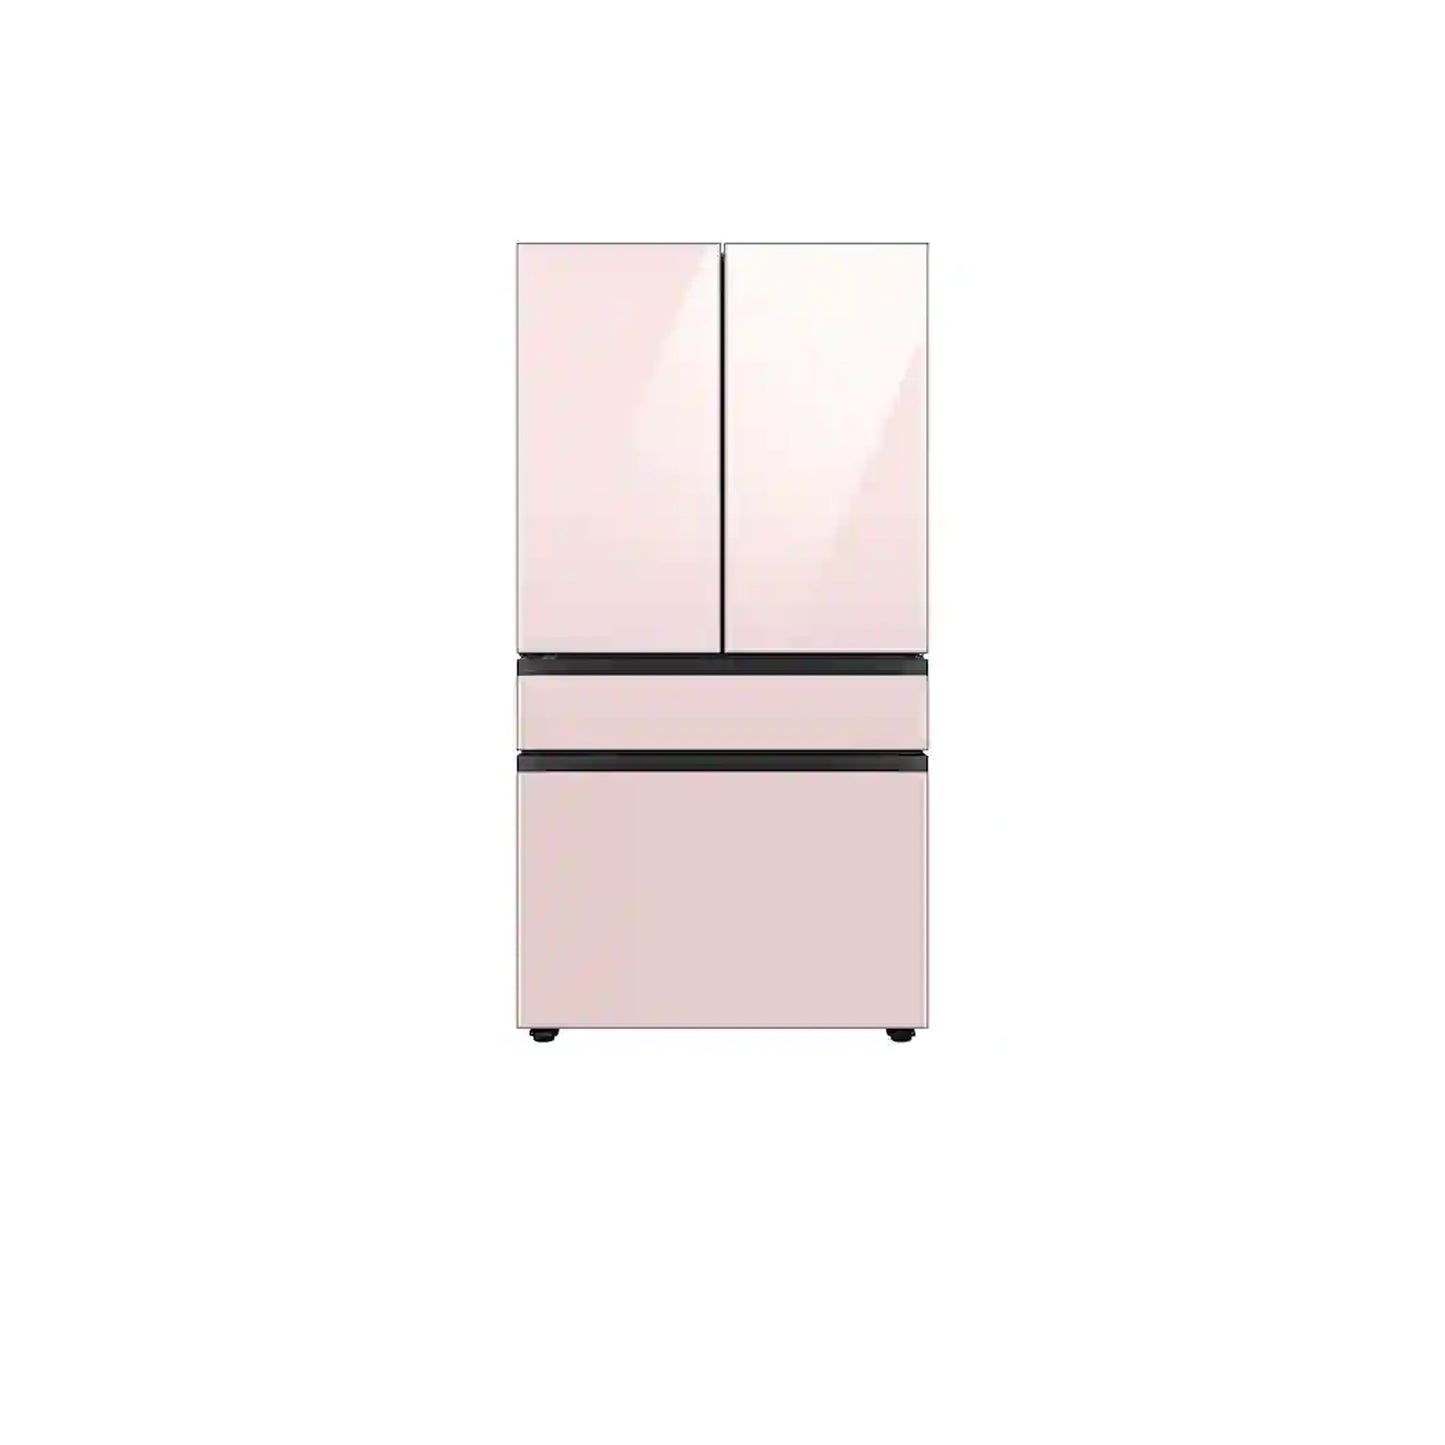 ثلاجة مخصصة بباب فرنسي بأربعة أبواب (23 قدمًا مكعبًا) مع ألوان لوحة الباب قابلة للتخصيص ومركز المشروبات ™ من الزجاج الوردي الوردي. 